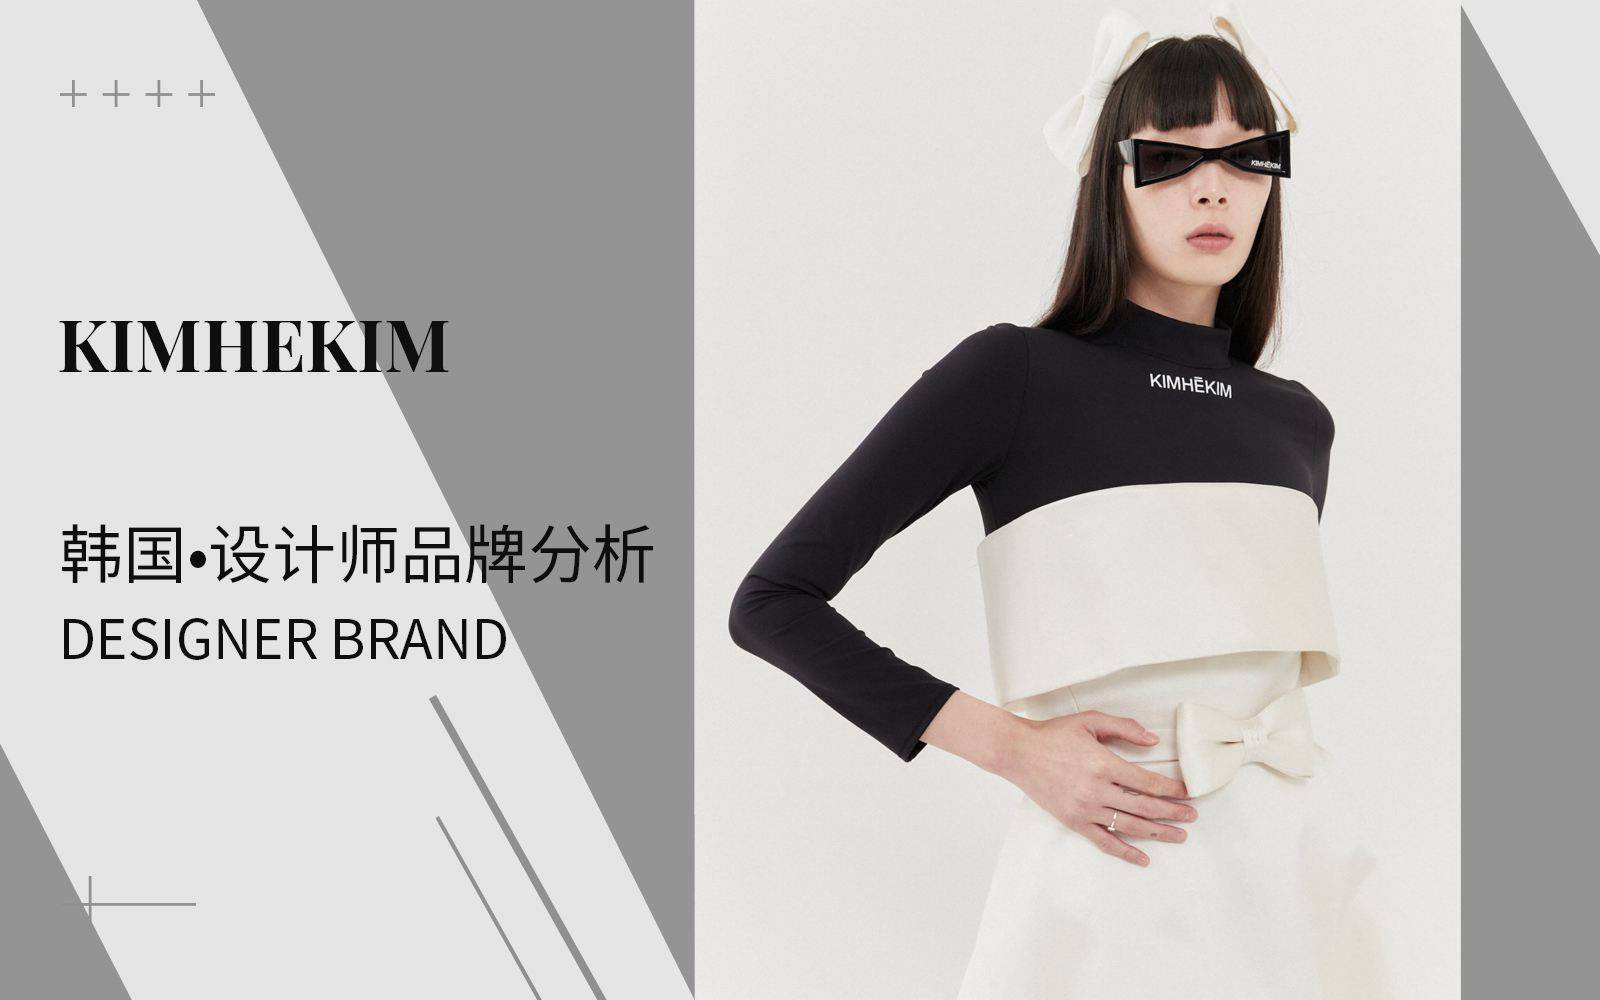 The Analysis of Kimhekim The Womenswear Designer Brand